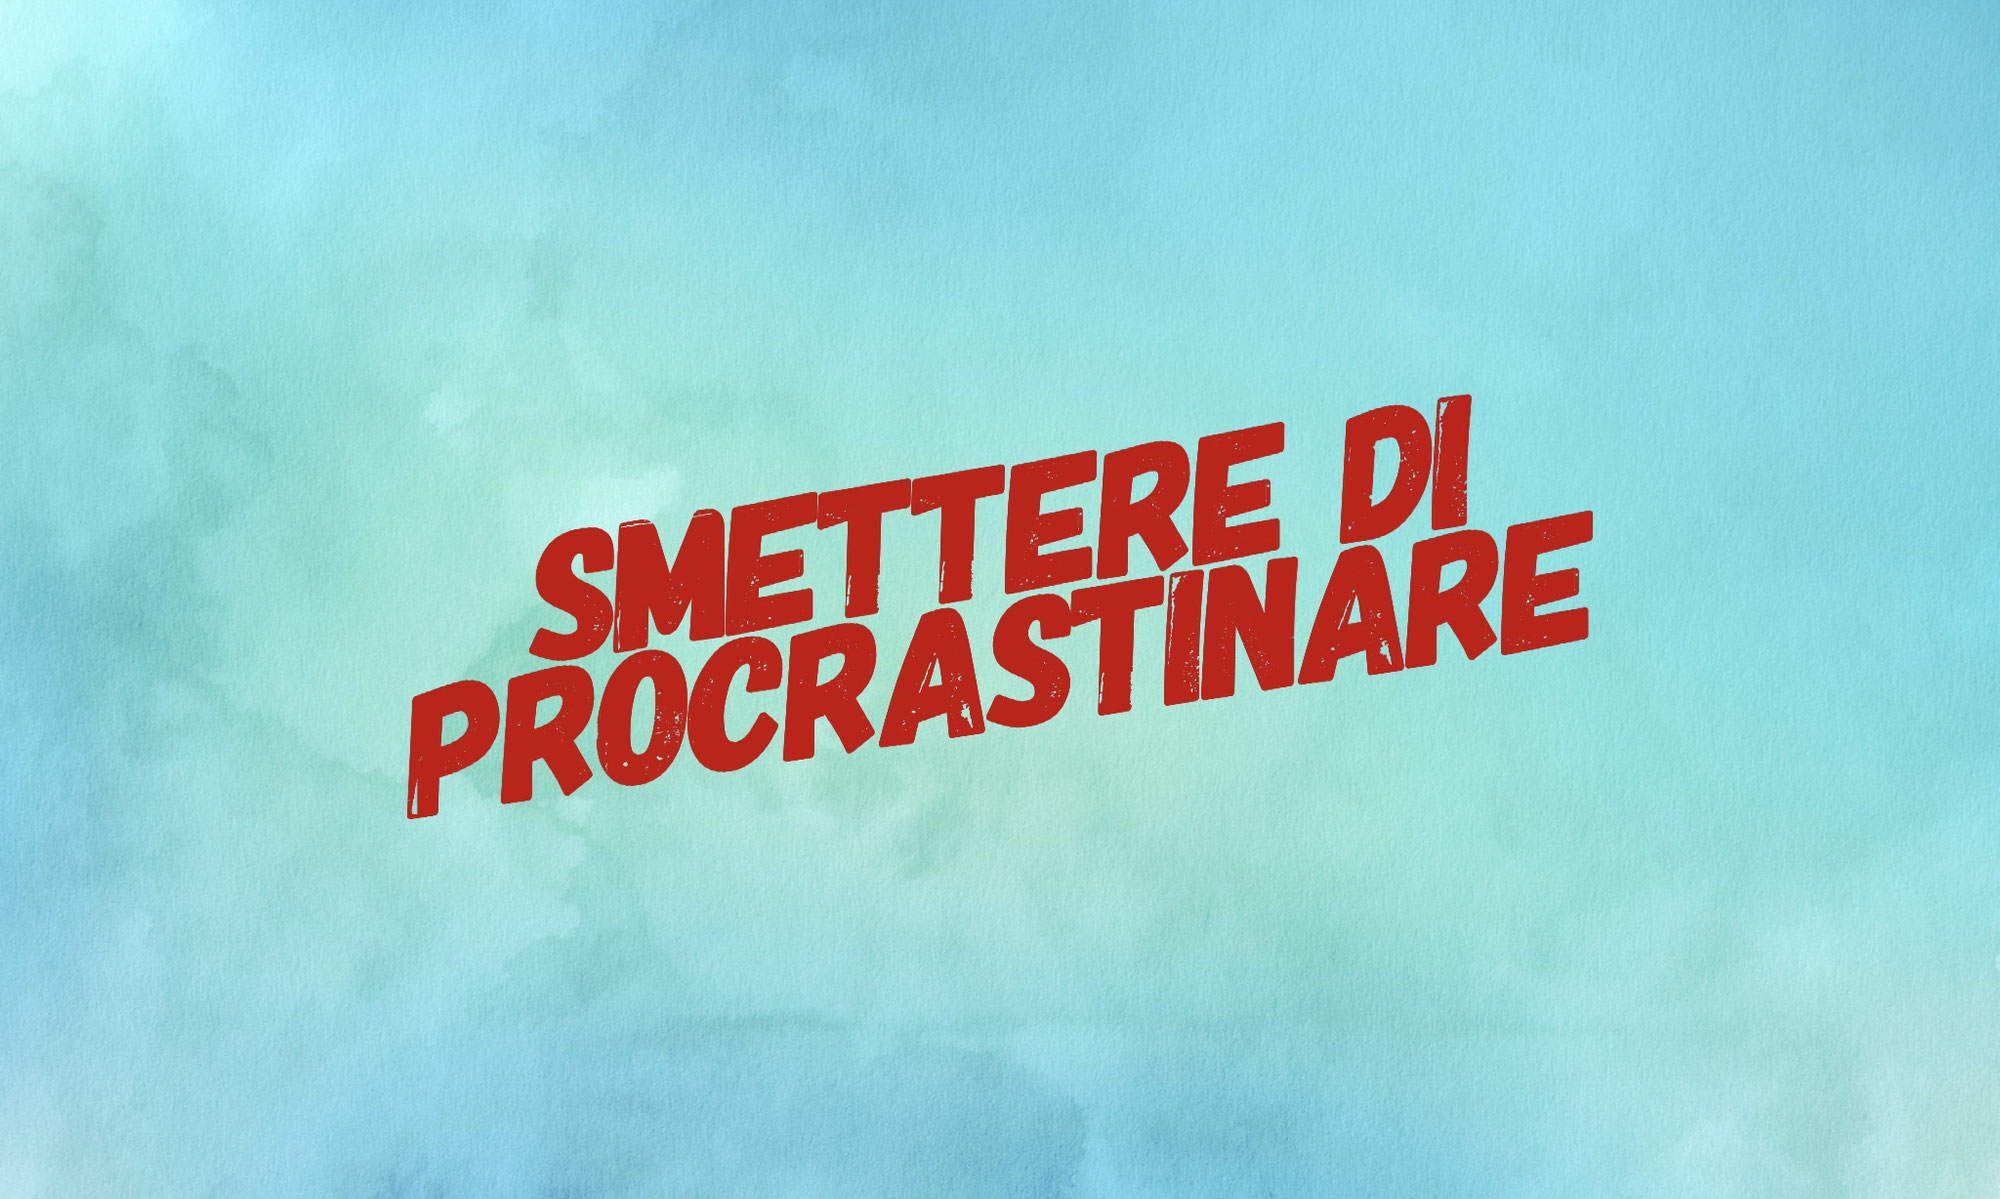 Smettere di procrastinare